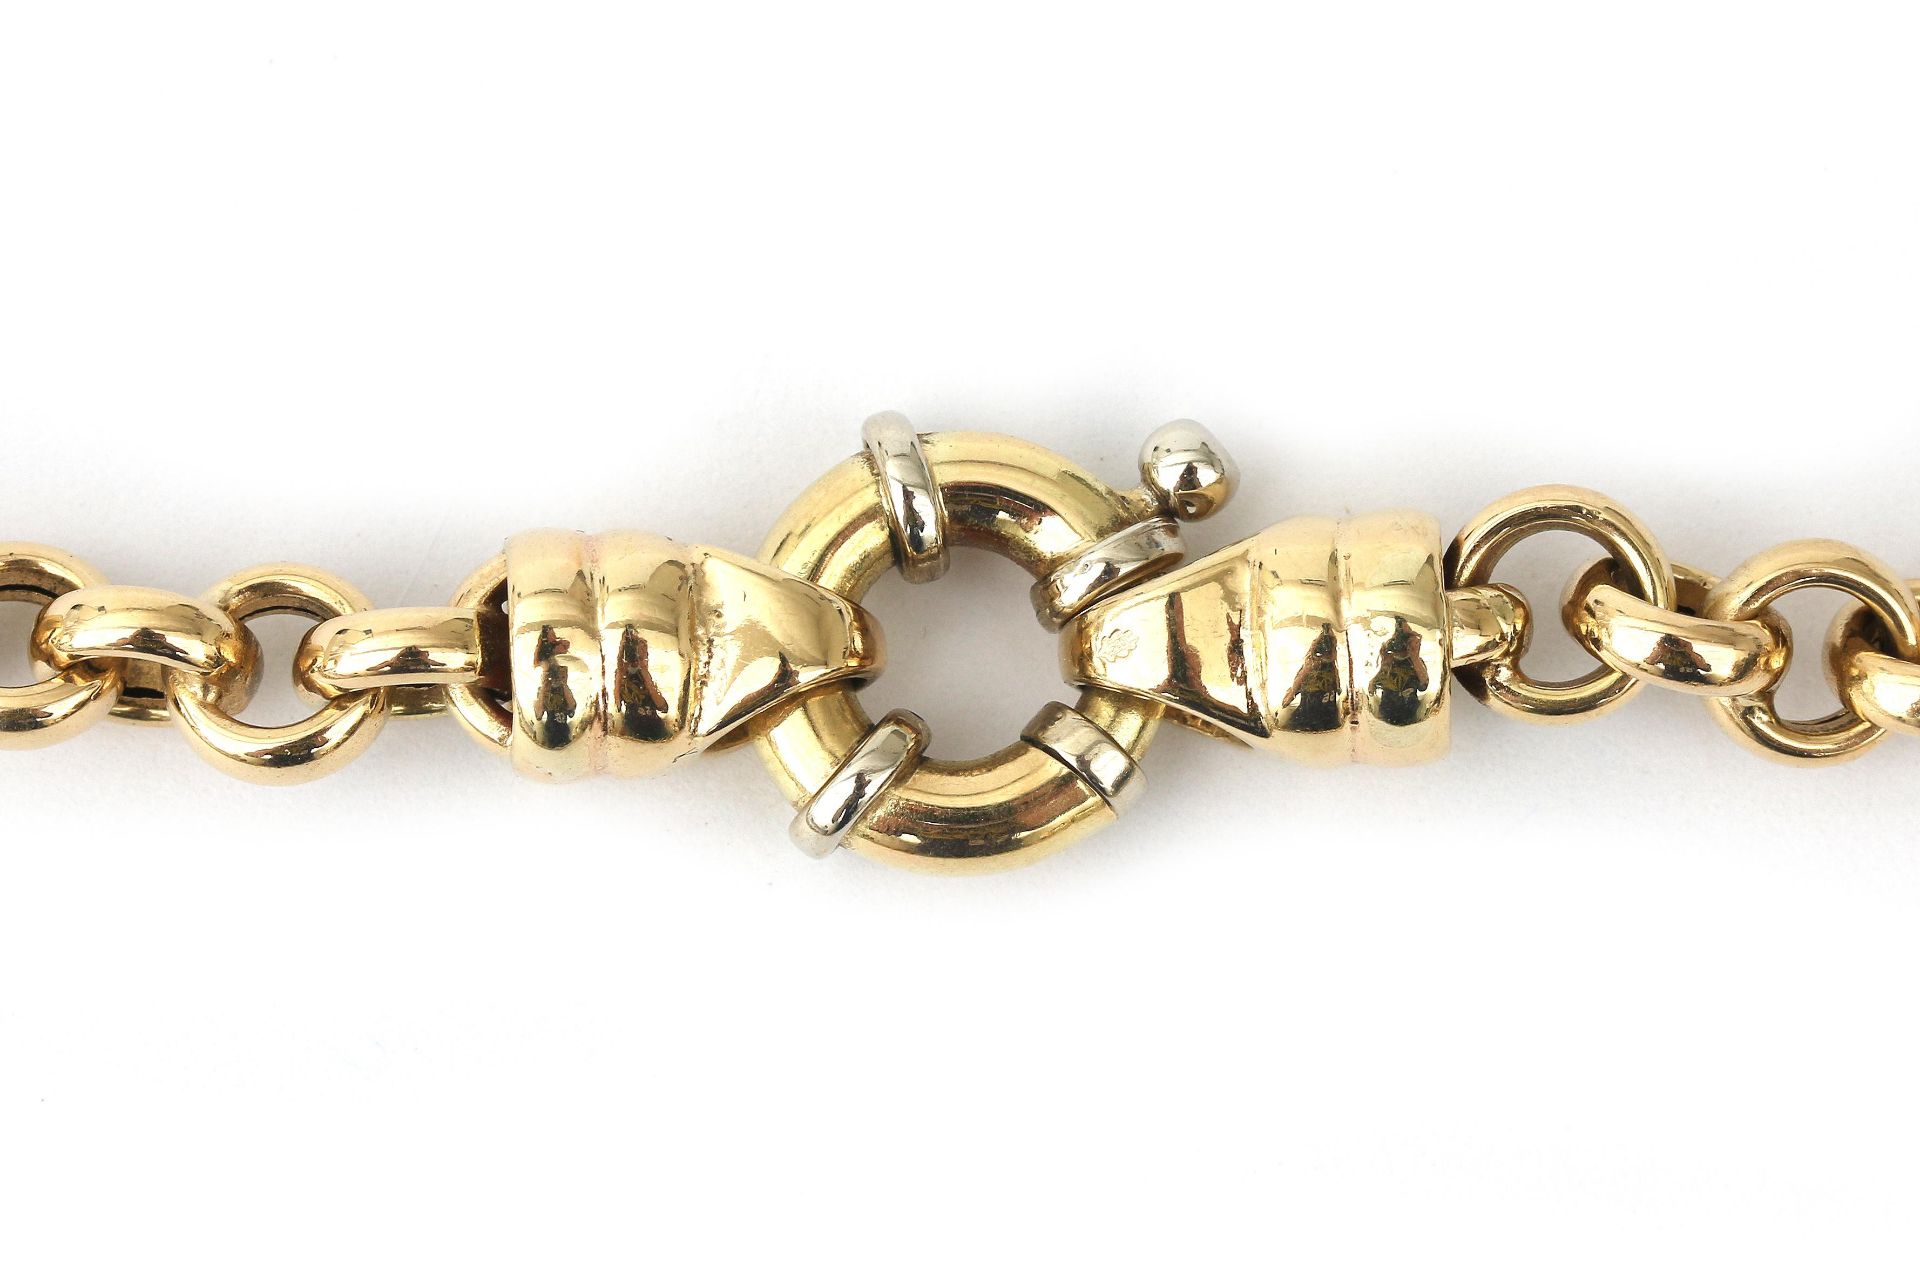 A 14 karat gold link necklace - Image 2 of 2